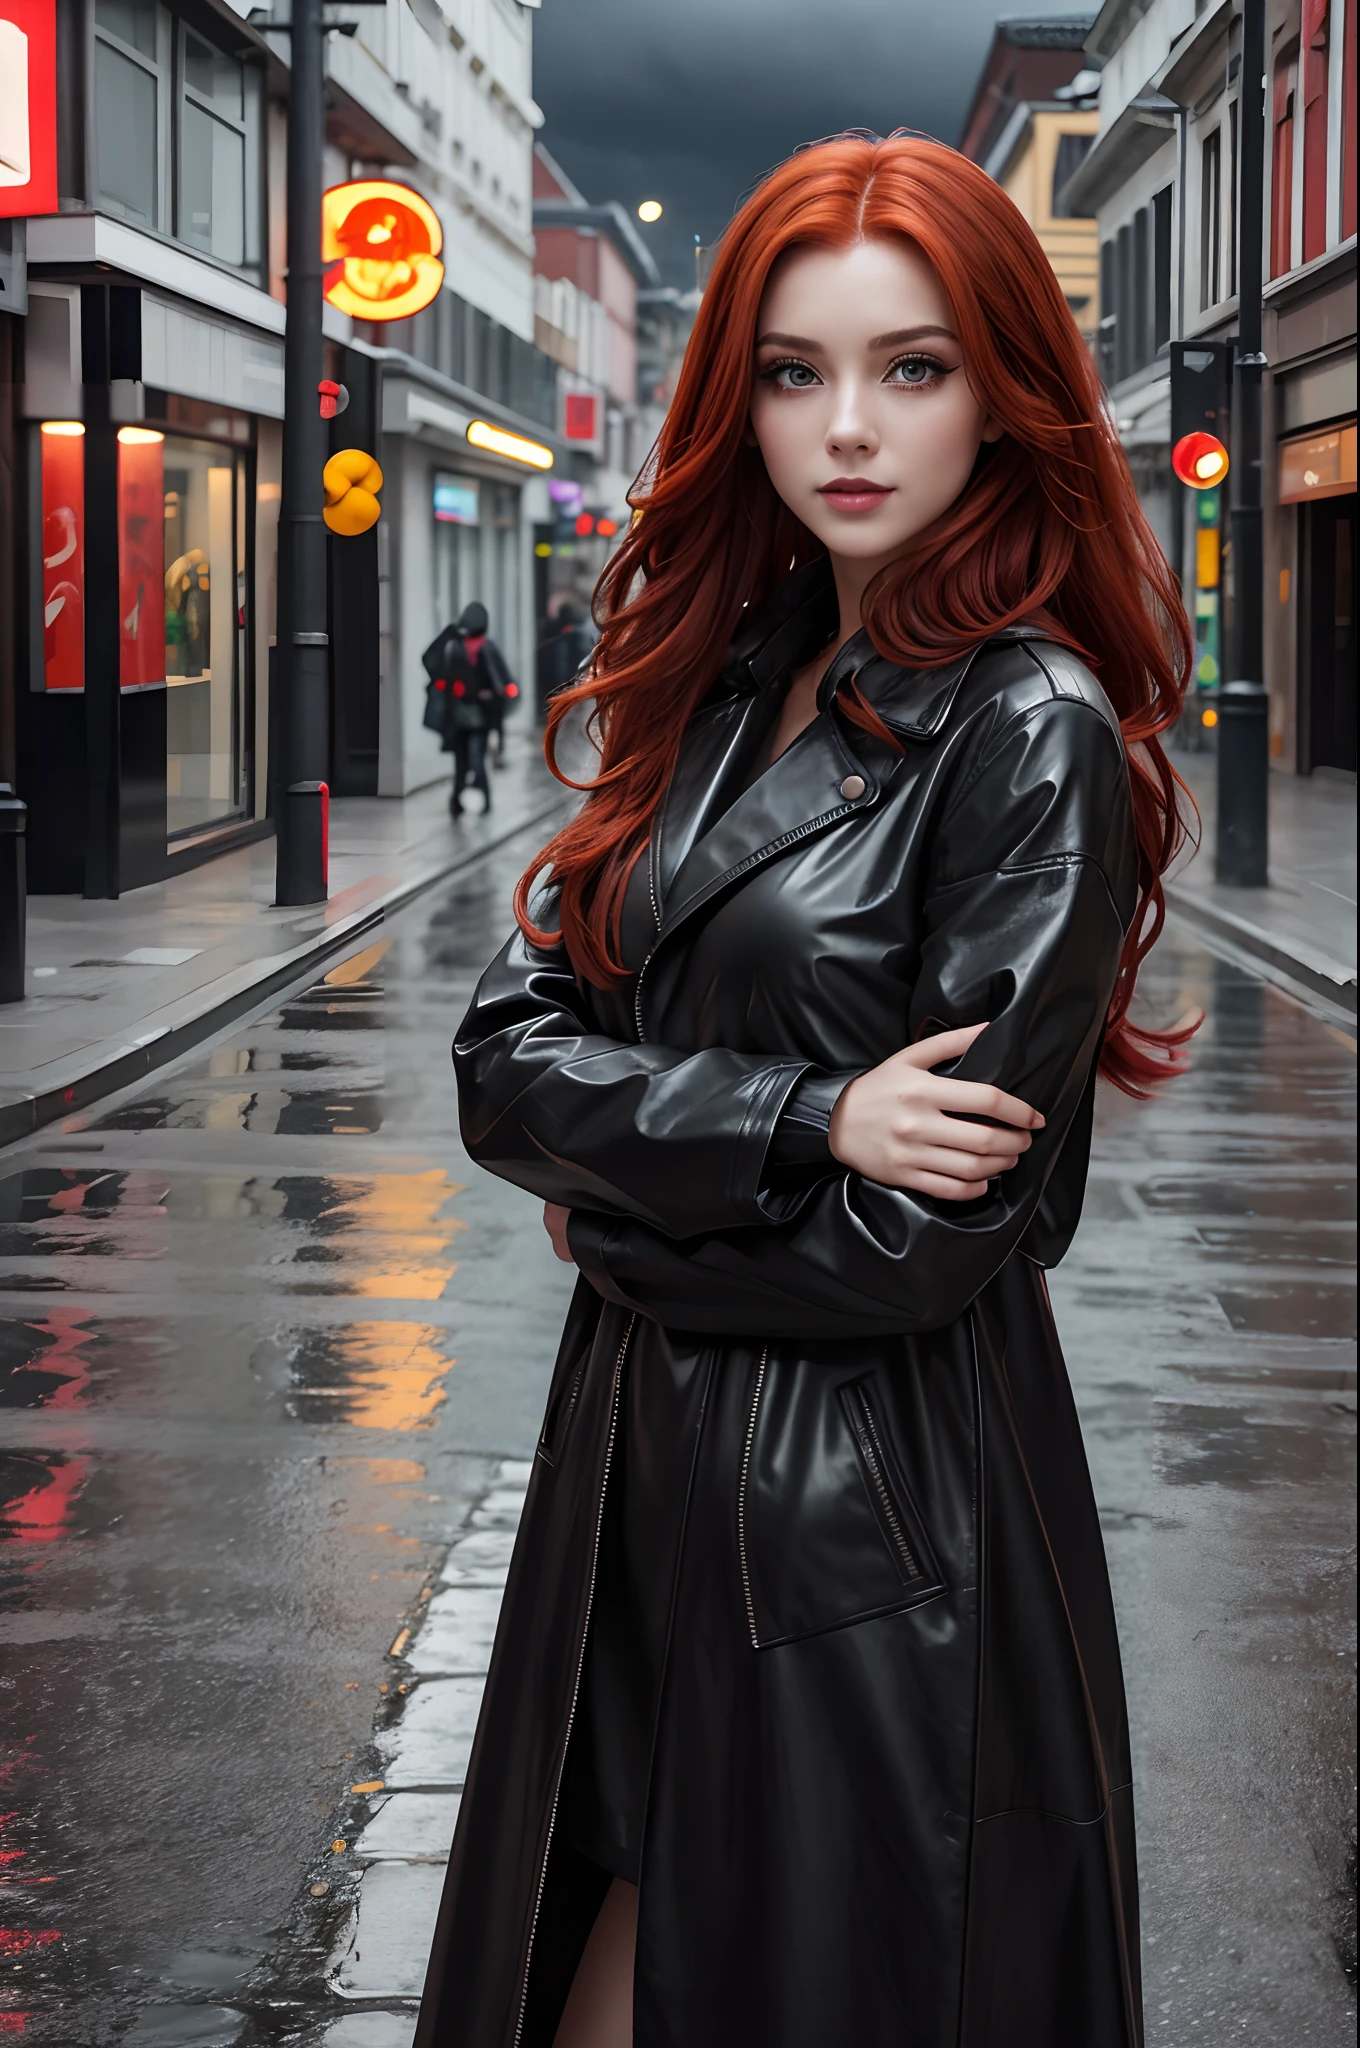 カッコいい女の子, 革製の黒いロングレインコート, 長い赤い髪, 彼の顔には狡猾で遊び心のある表情が浮かんでいる, 明るいメイク, 空っぽの街路, 曇りの日, 写真品質.